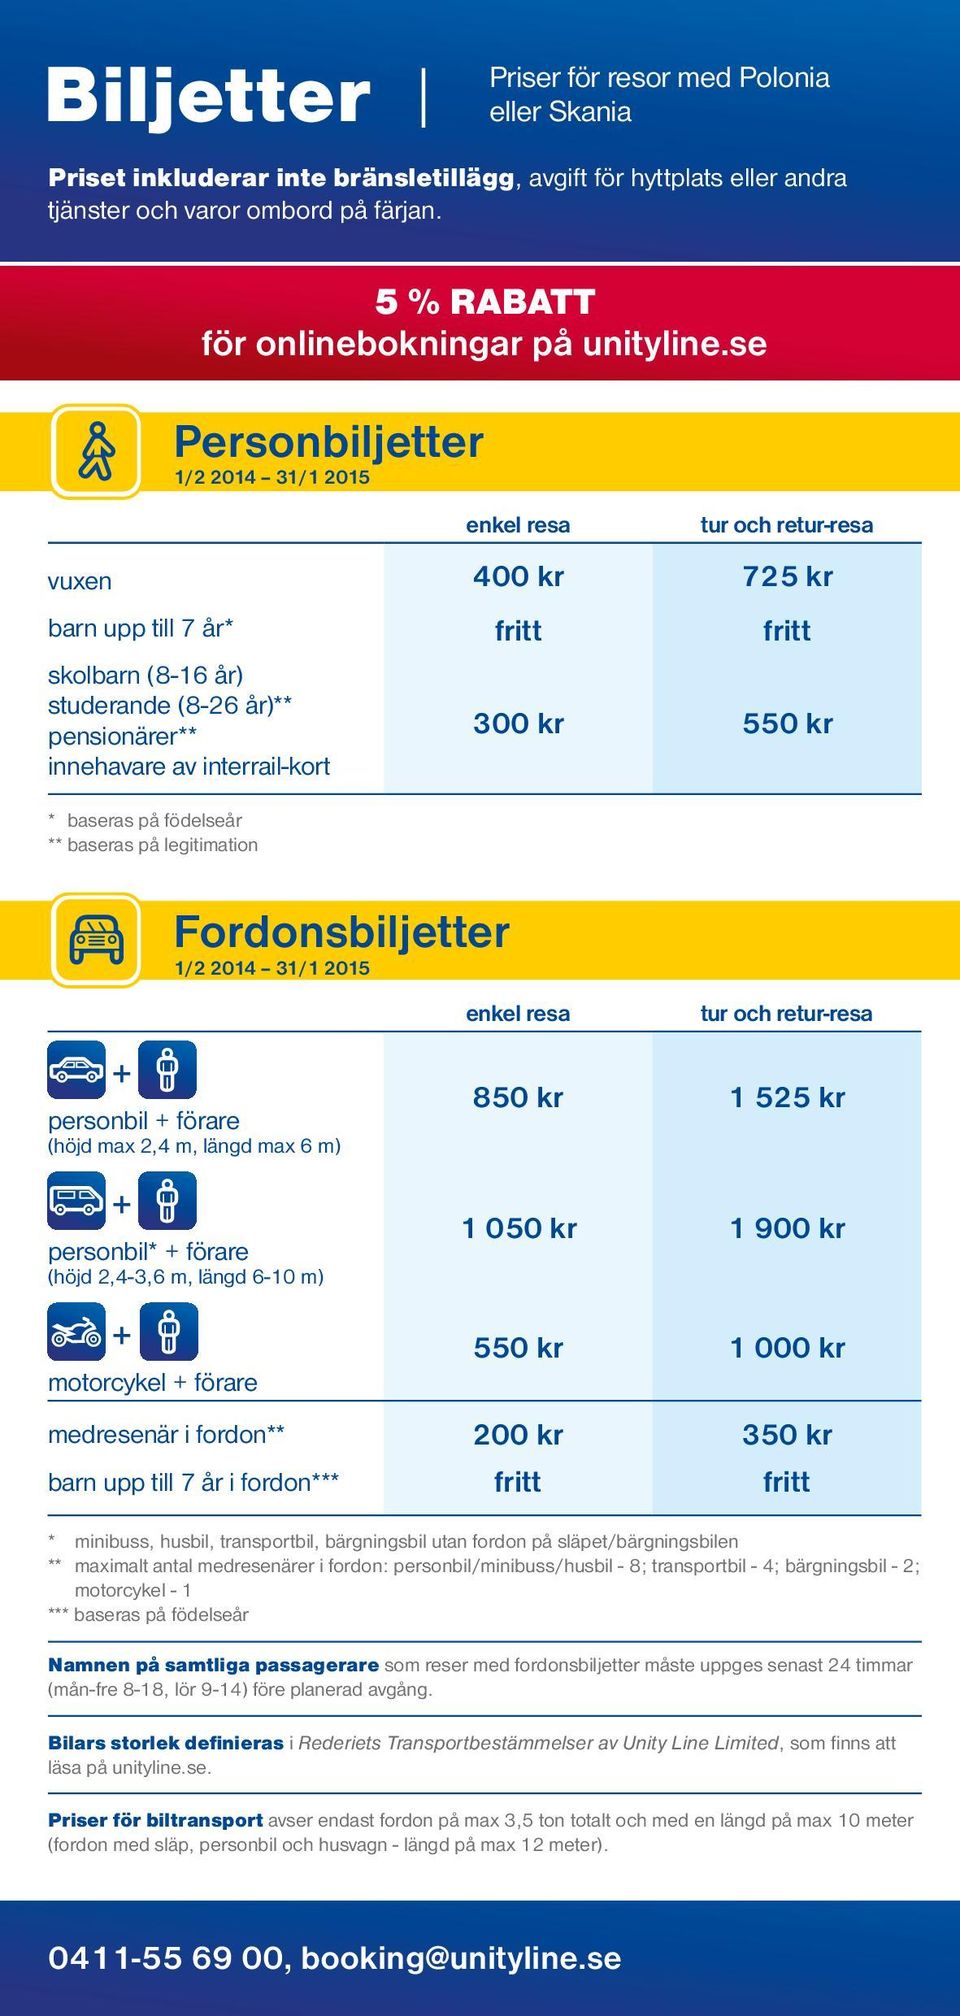 interrail-kort 300 kr 550 kr * baseras på födelseår ** baseras på legitimation Personbiljetter 1/2 2014 31/1 2015 Fordonsbiljetter 1/2 2014 31/1 2015 enkel resa tur och retur-resa + personbil +